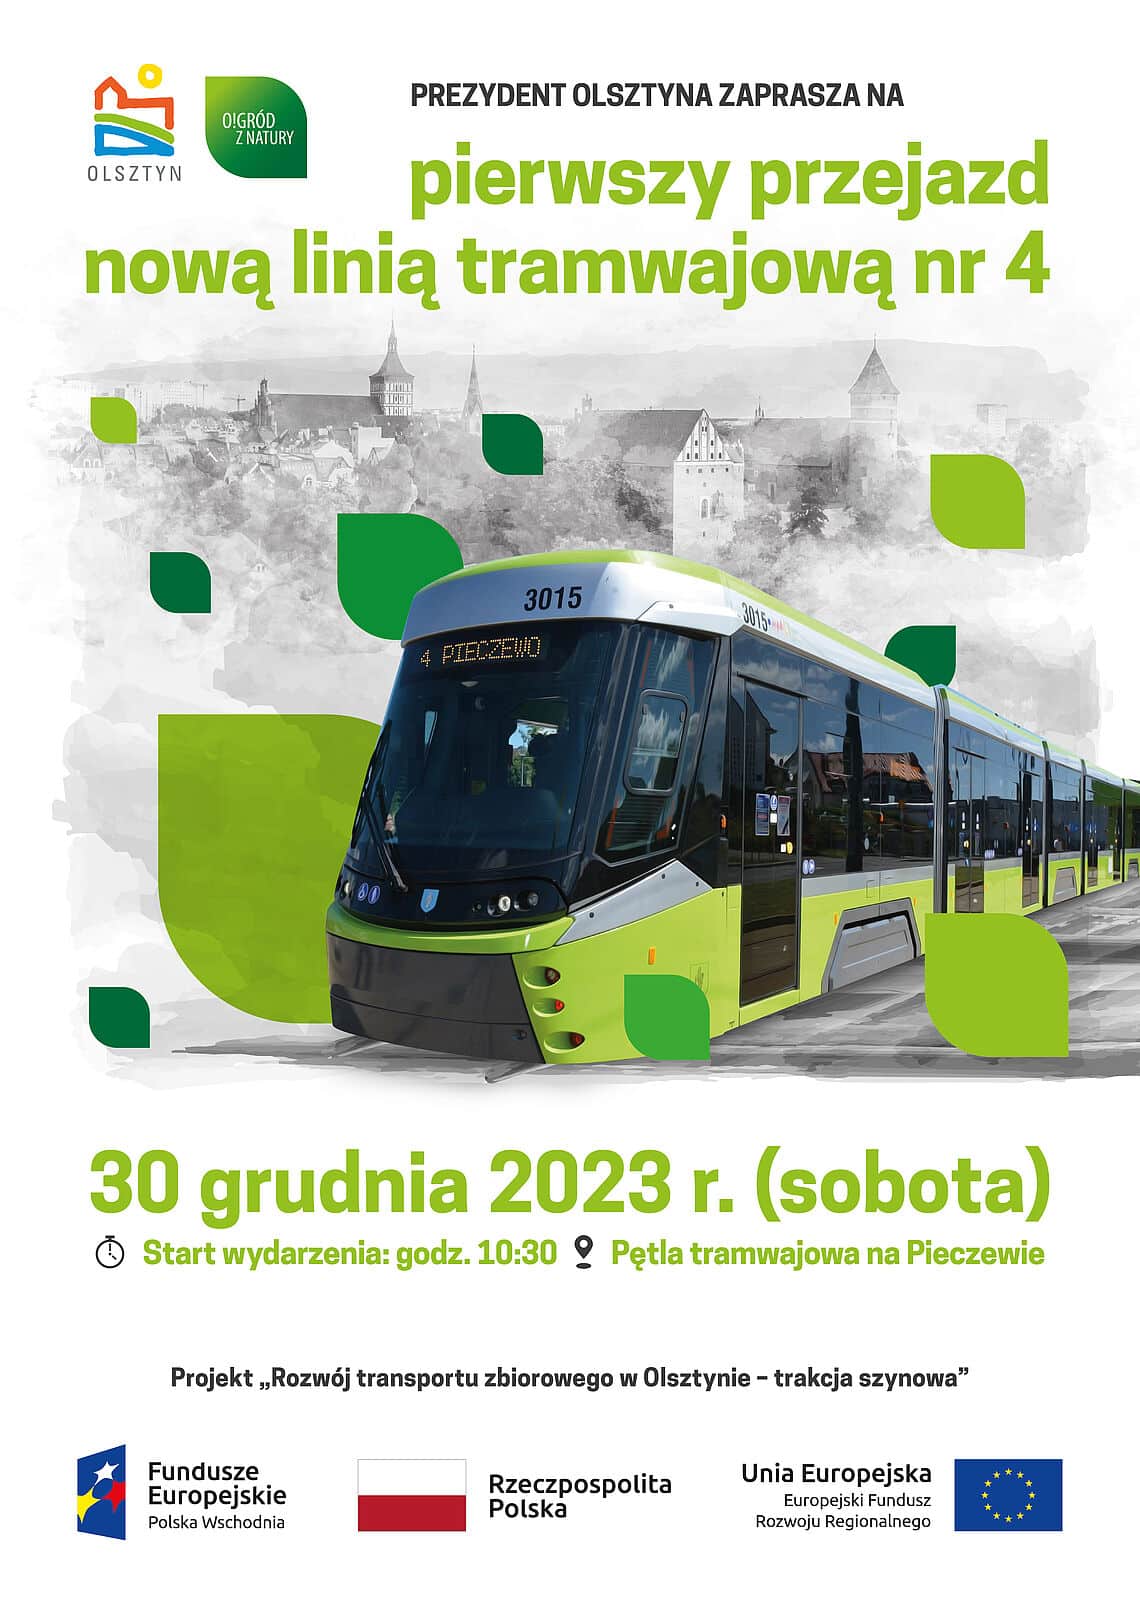 Inauguracyjna podróż nowej linii tramwajowej w Olsztynie tramwaje Olsztyn, Wiadomości, zShowcase